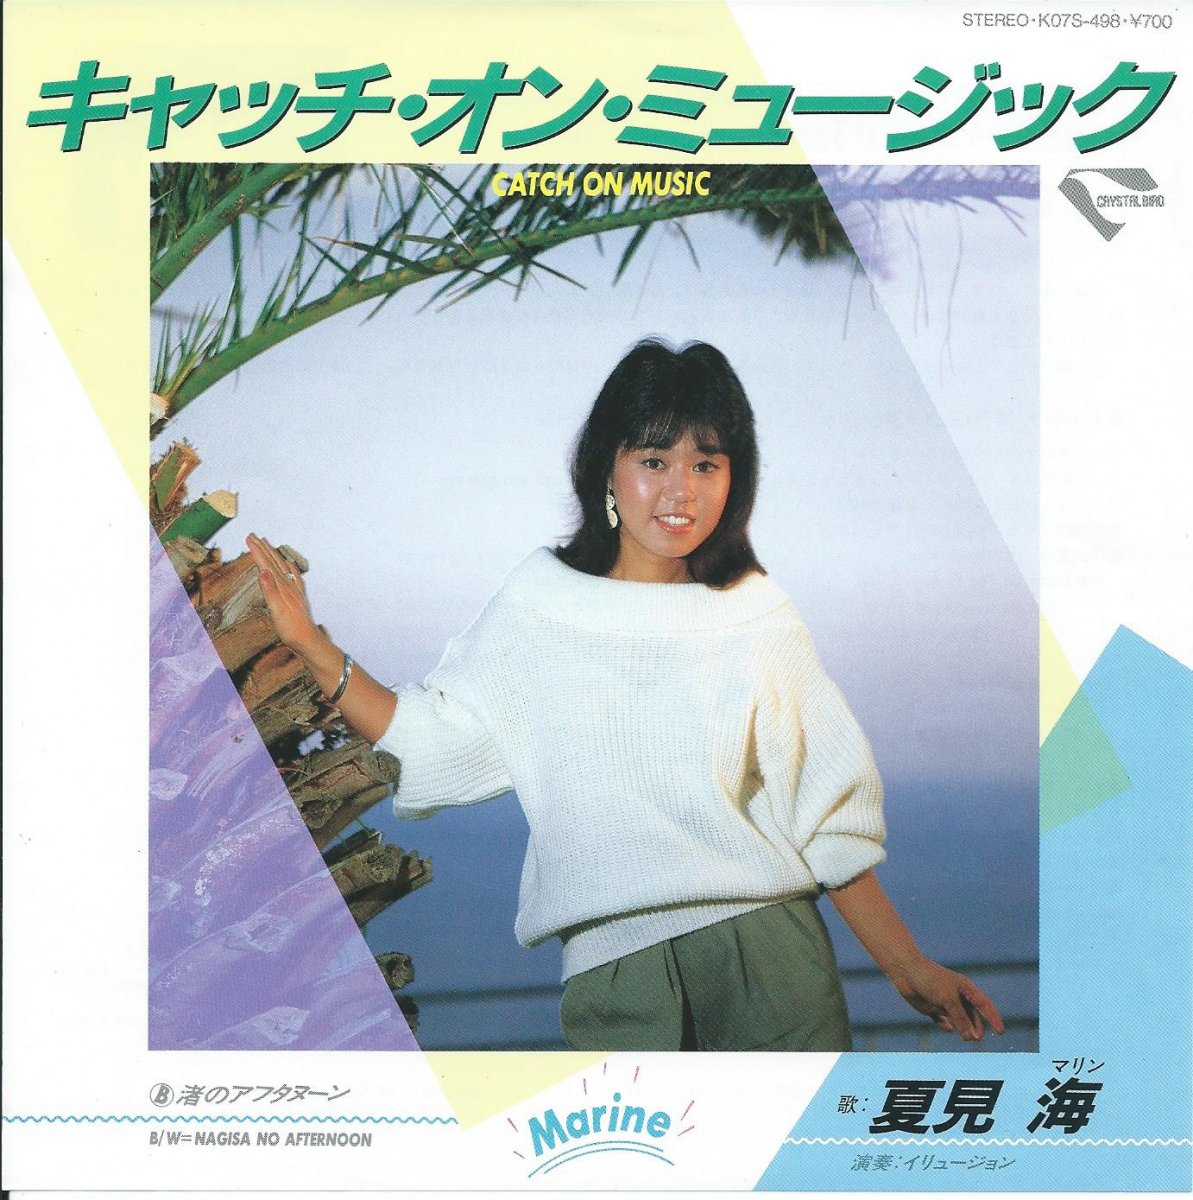 夏見海 MARINE NATSUMI / キャッチ・オン・ミュージック CATCH ON MUSIC (7